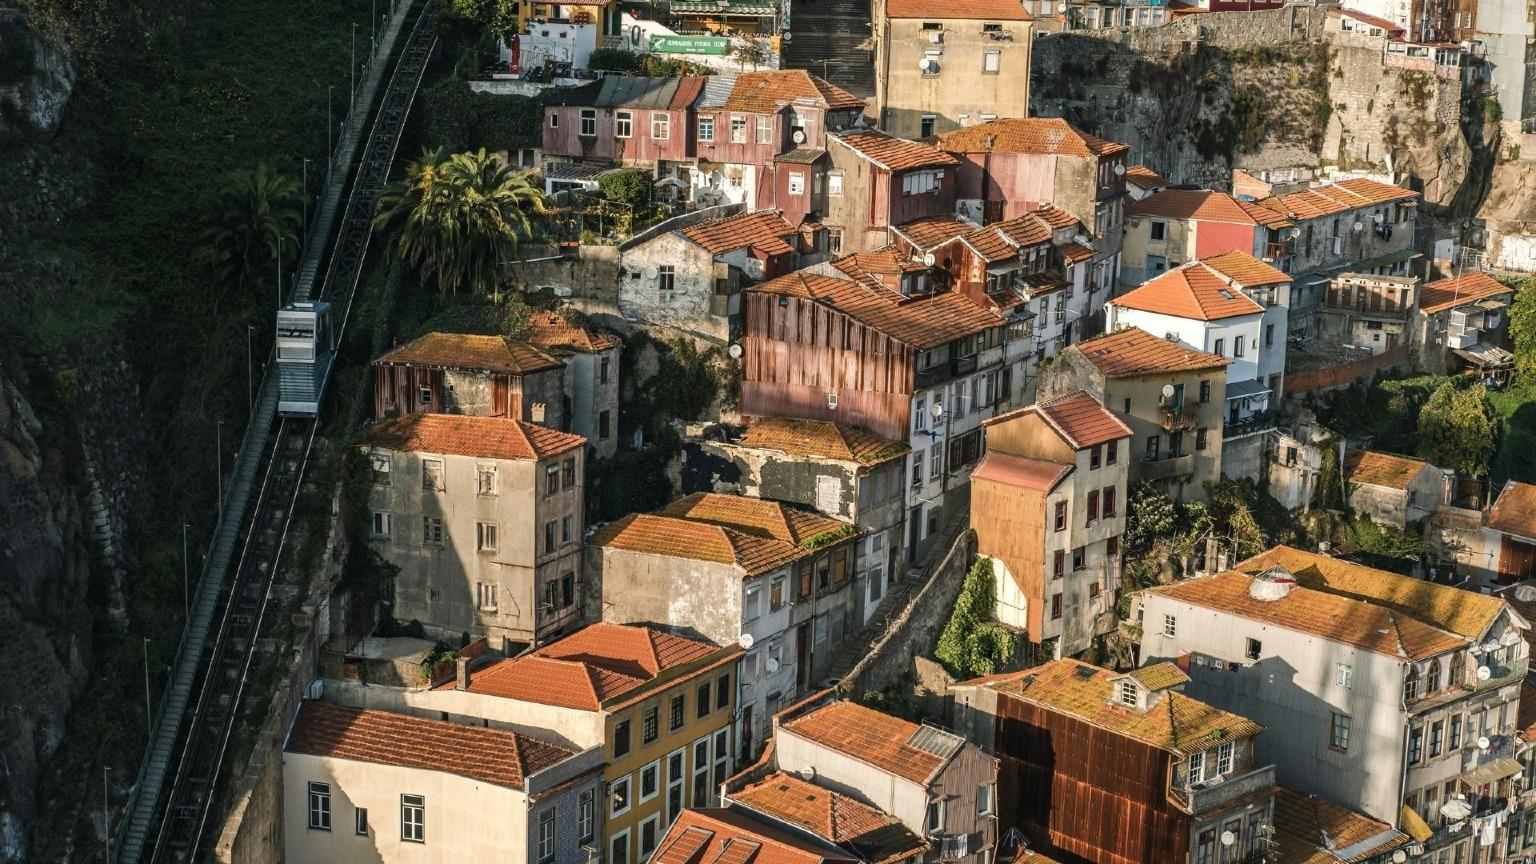 O Funicular dos Guindais sobe do nível superior do Porto (Batalha) para o nível inferior (Ribeira), oferecendo vistas deslumbrantes da paisagem urbana.